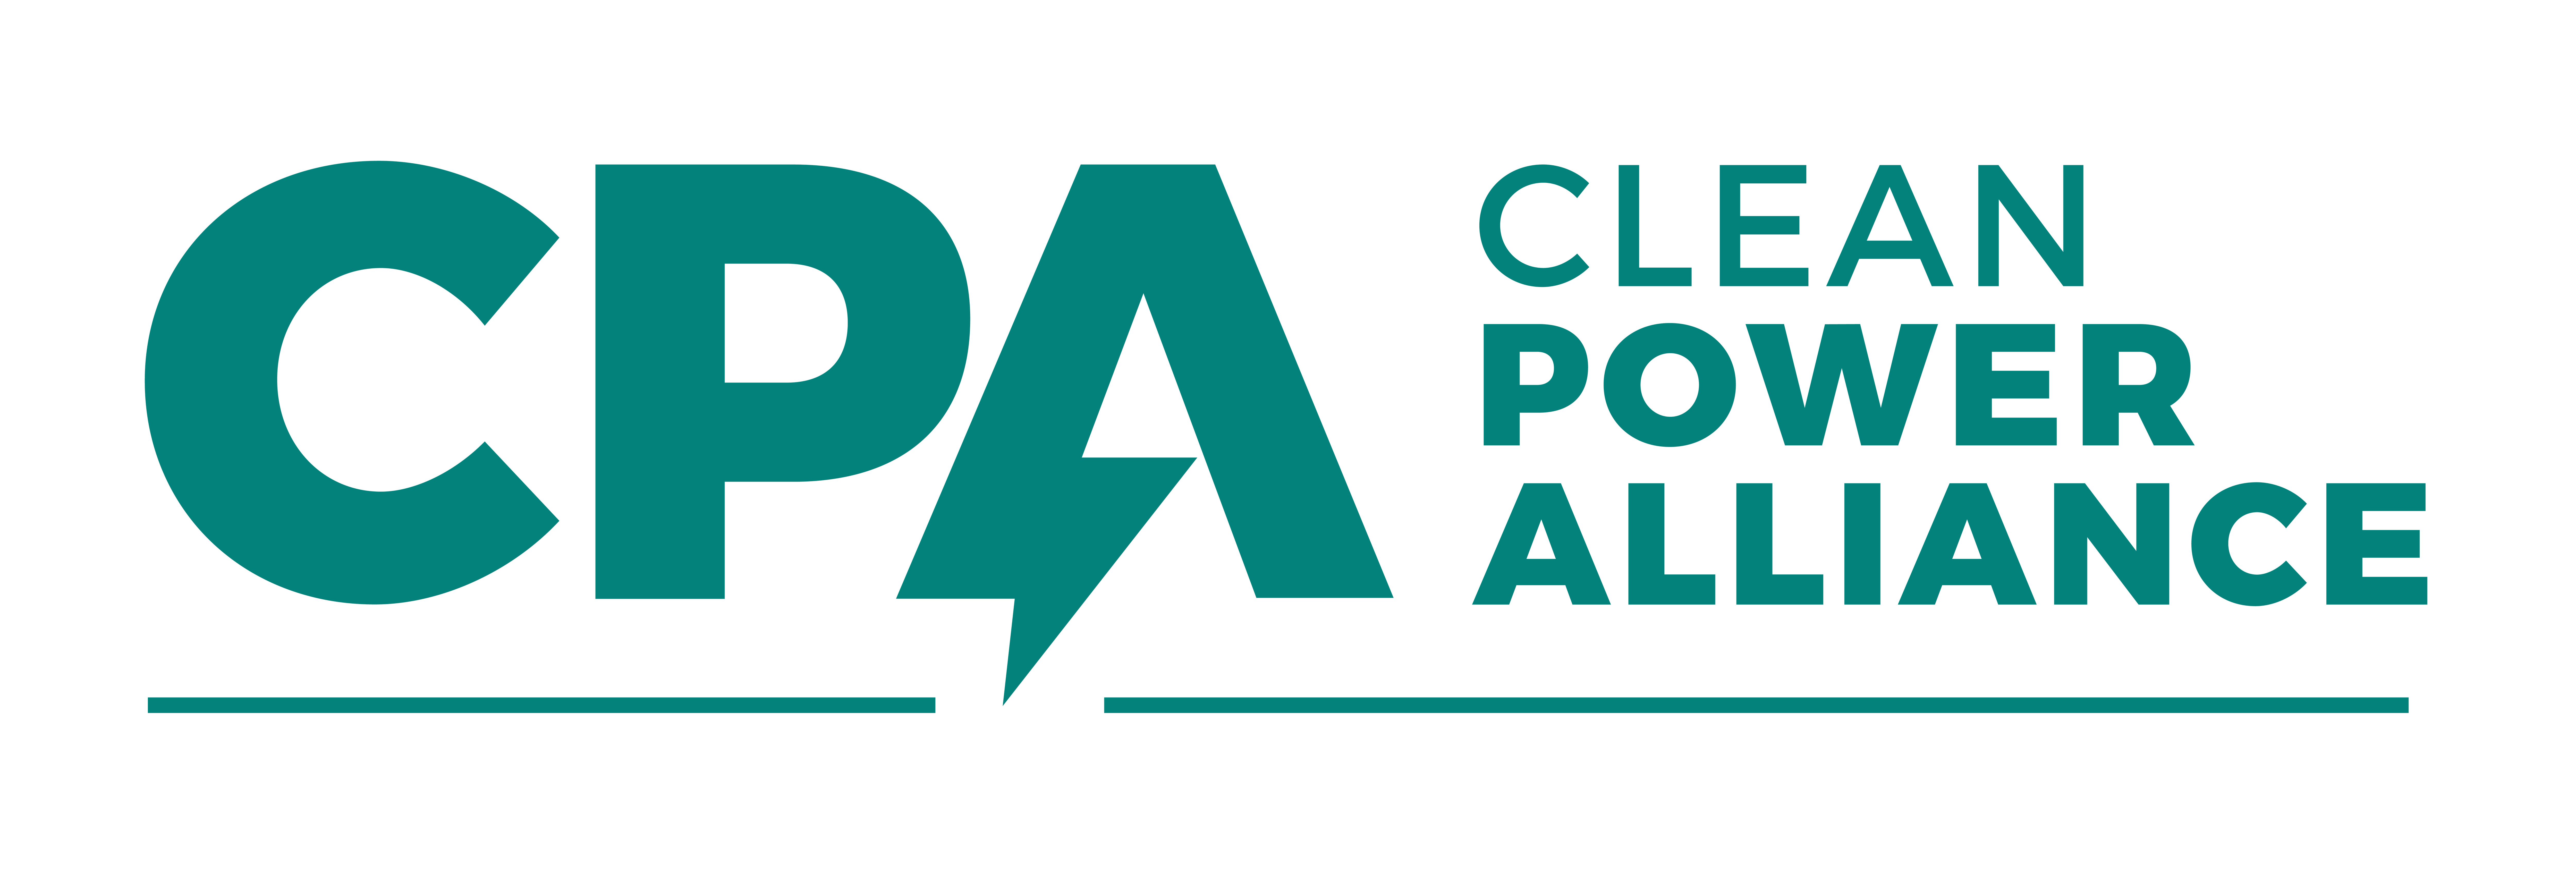 Clean Power Alliance (CPA) logo